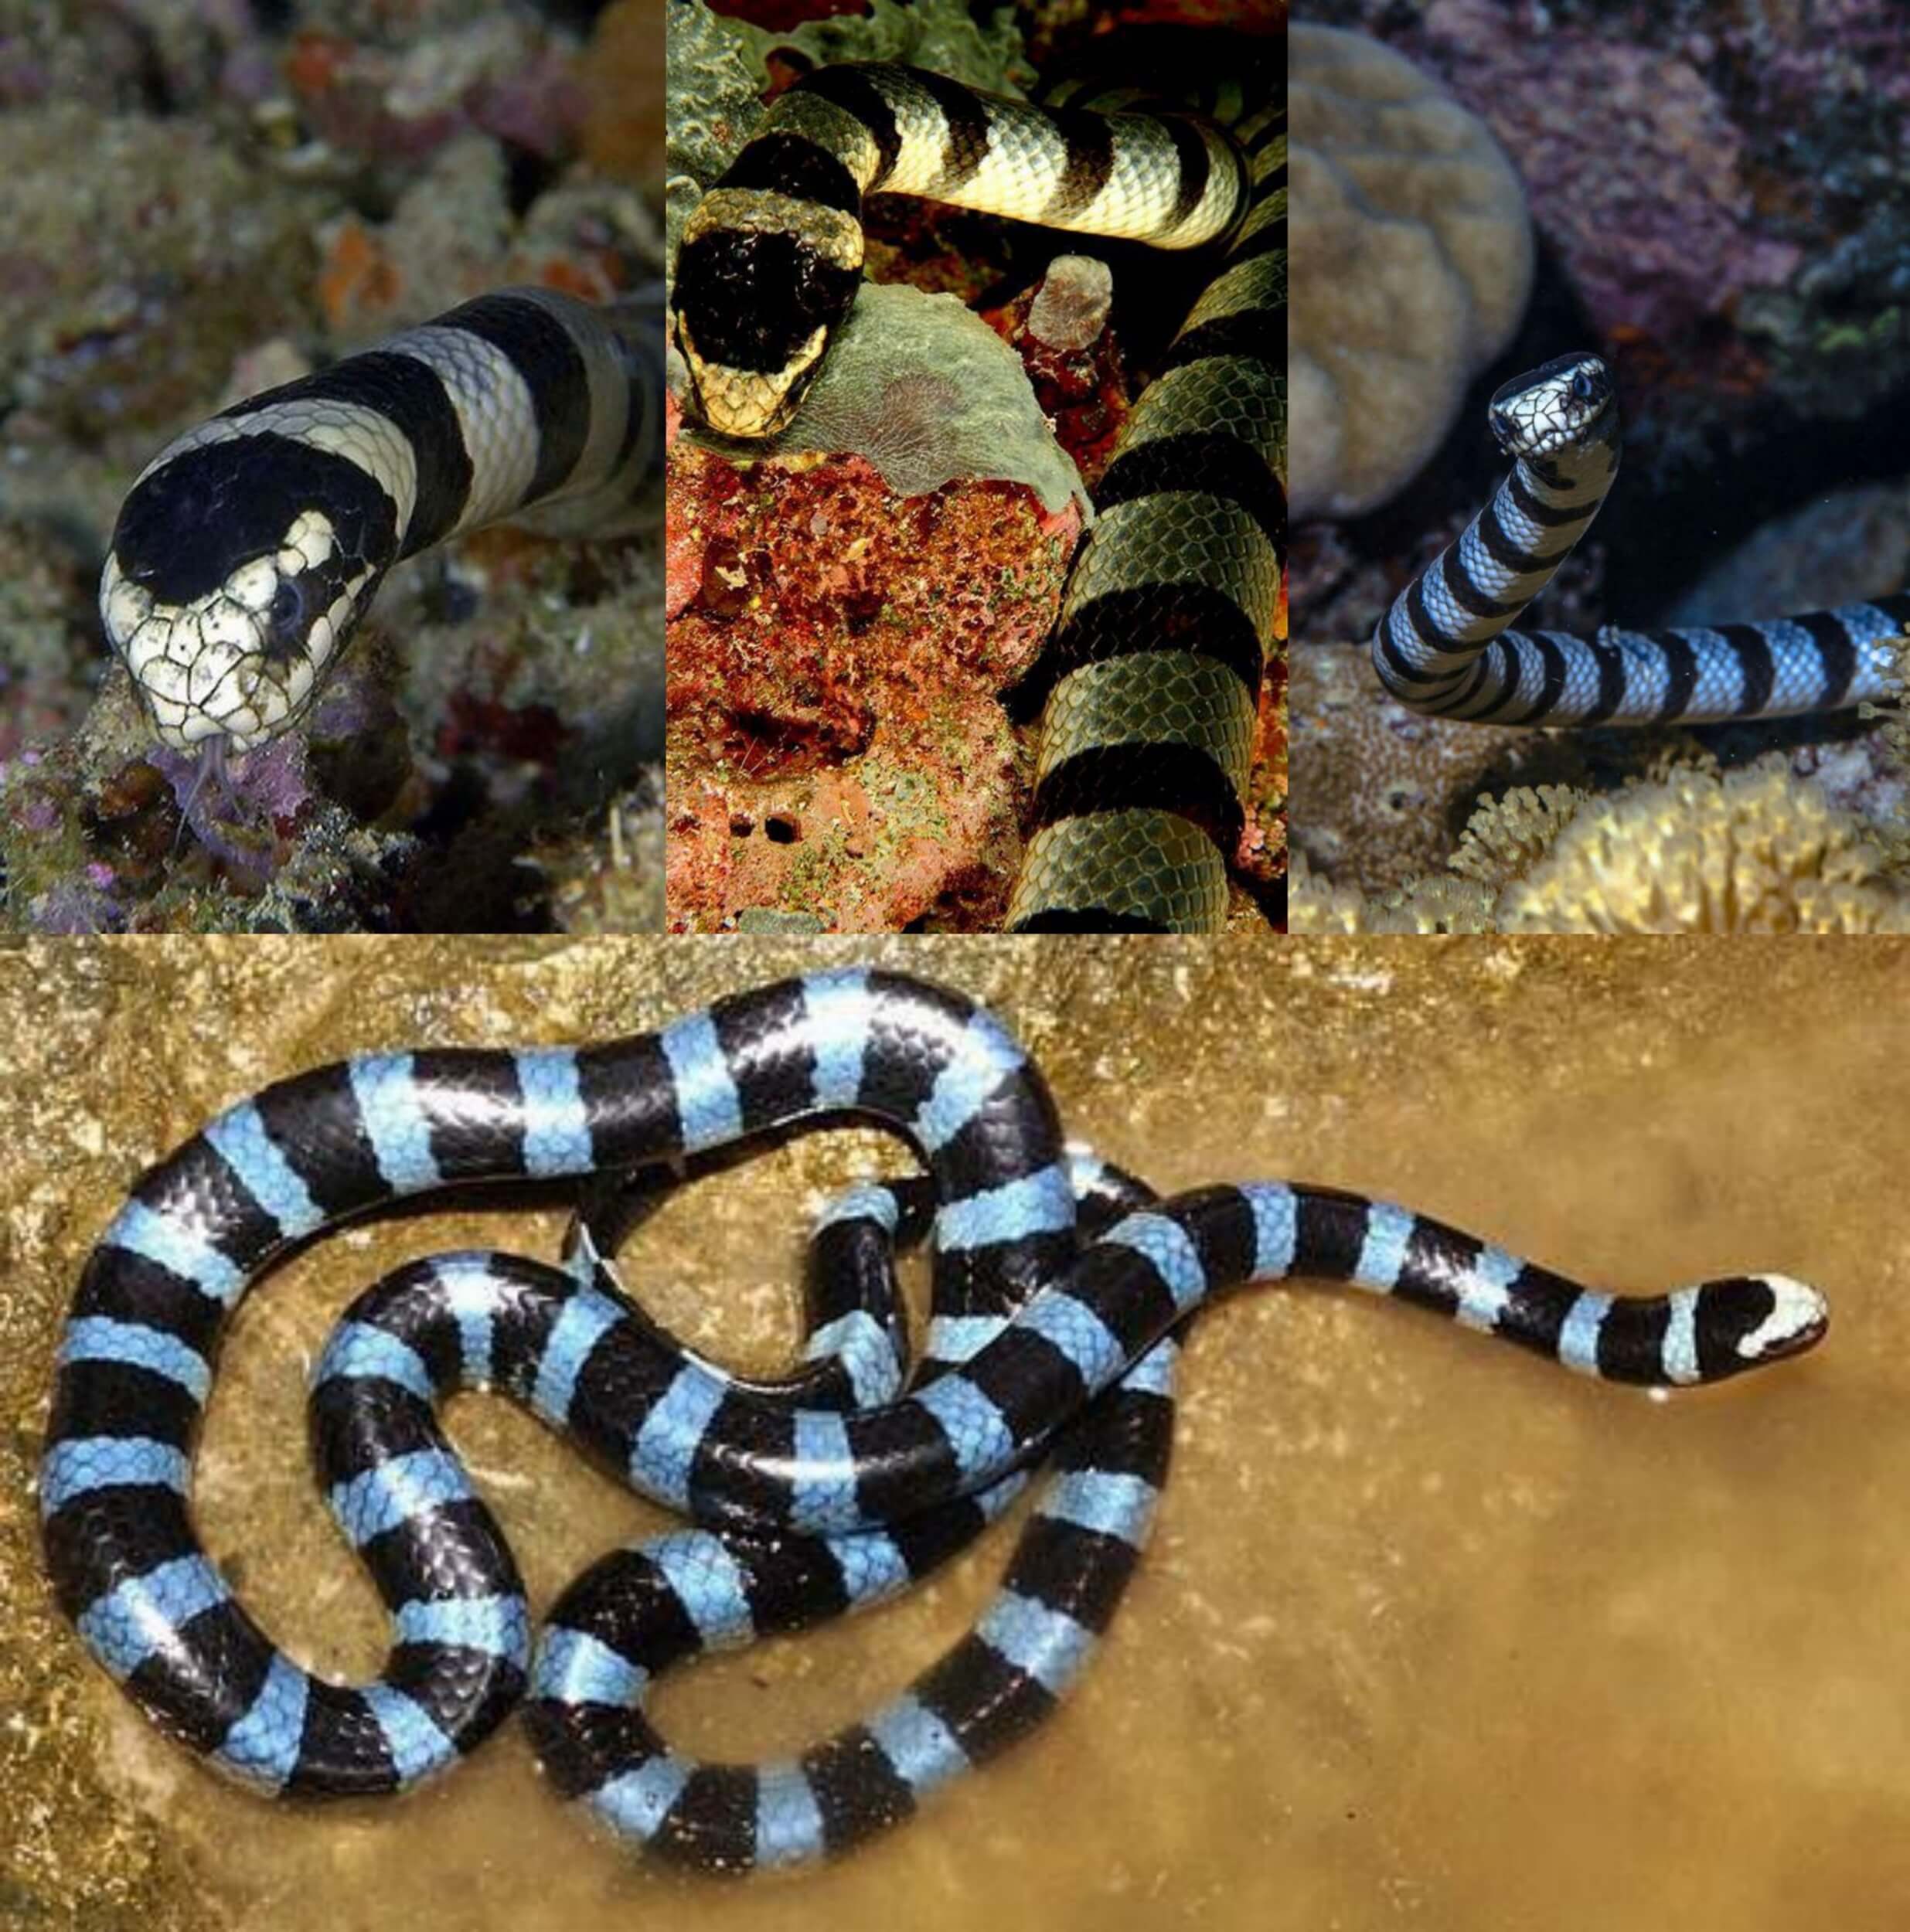 blue krait snake